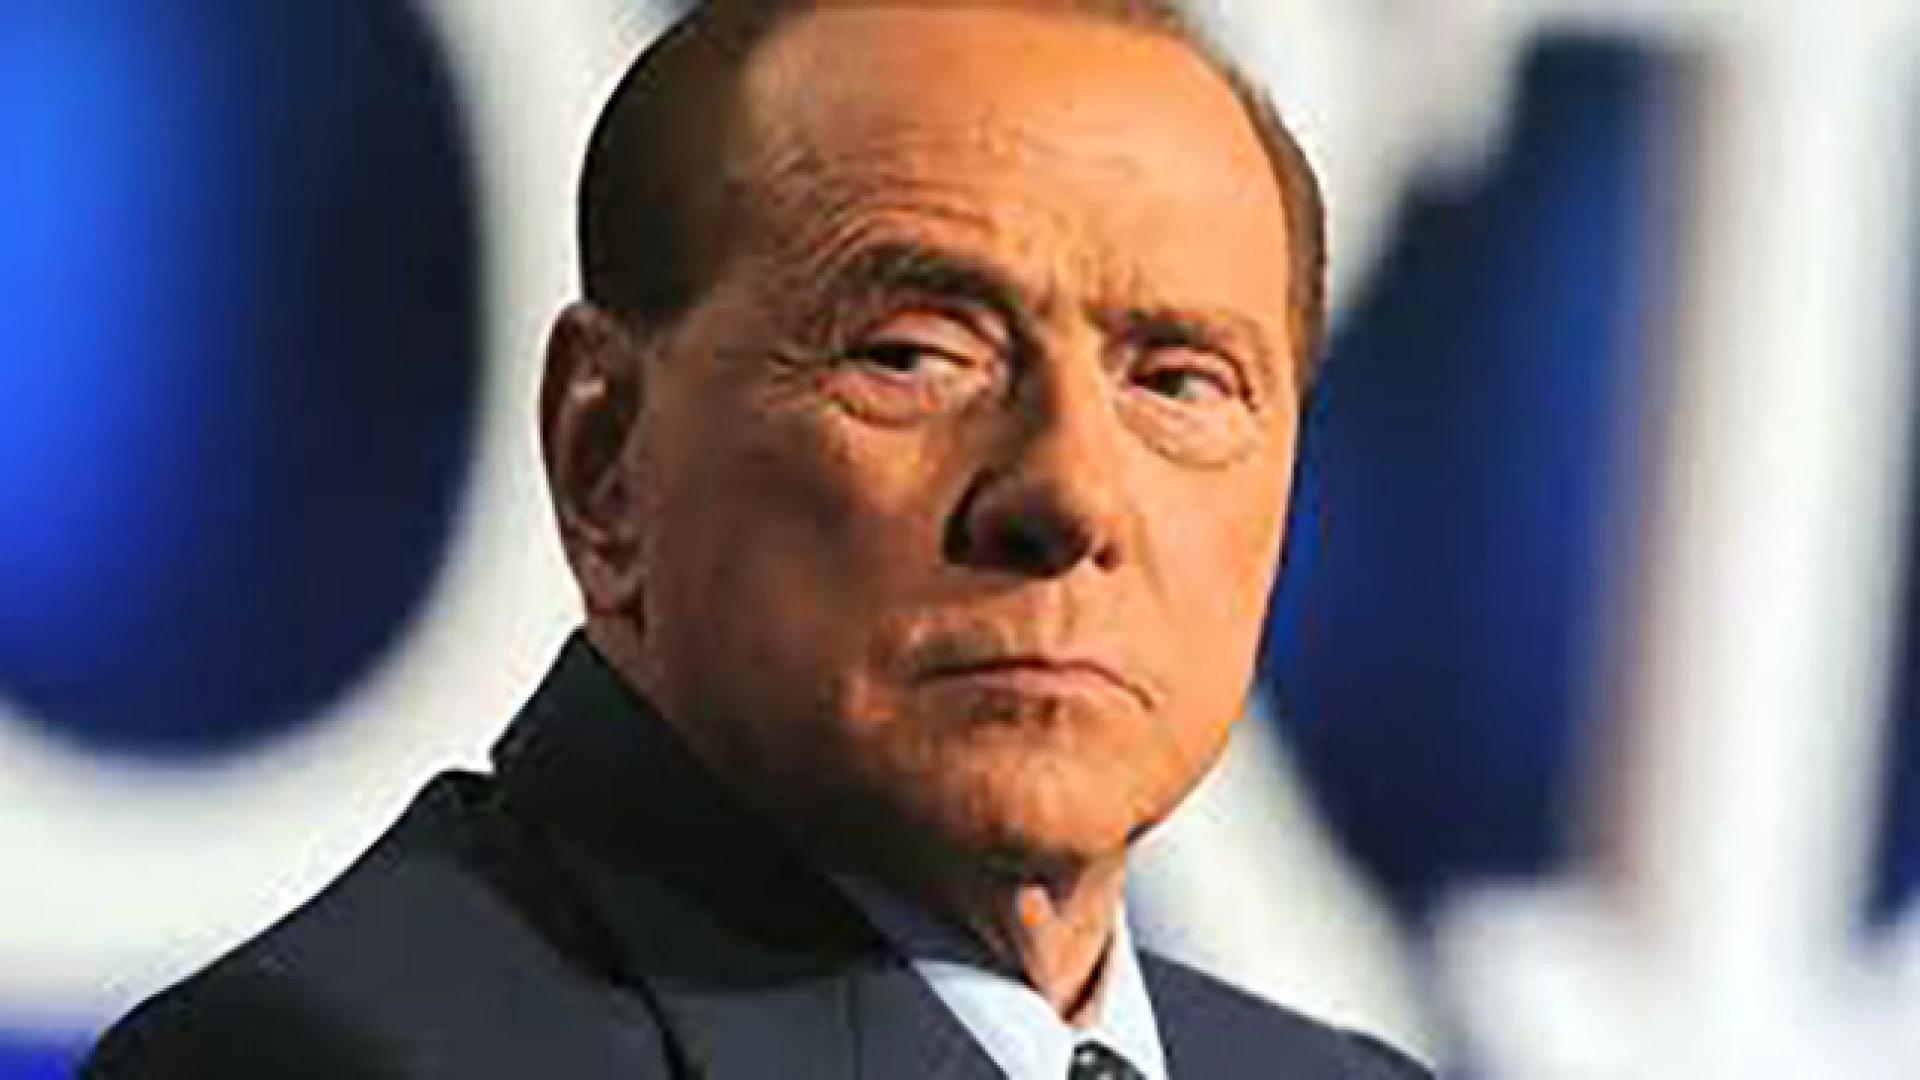 Regionali 2018: in Molise arrivano Berlusconi e Speranza. Fine campagna elettorale davvero di fuoco.